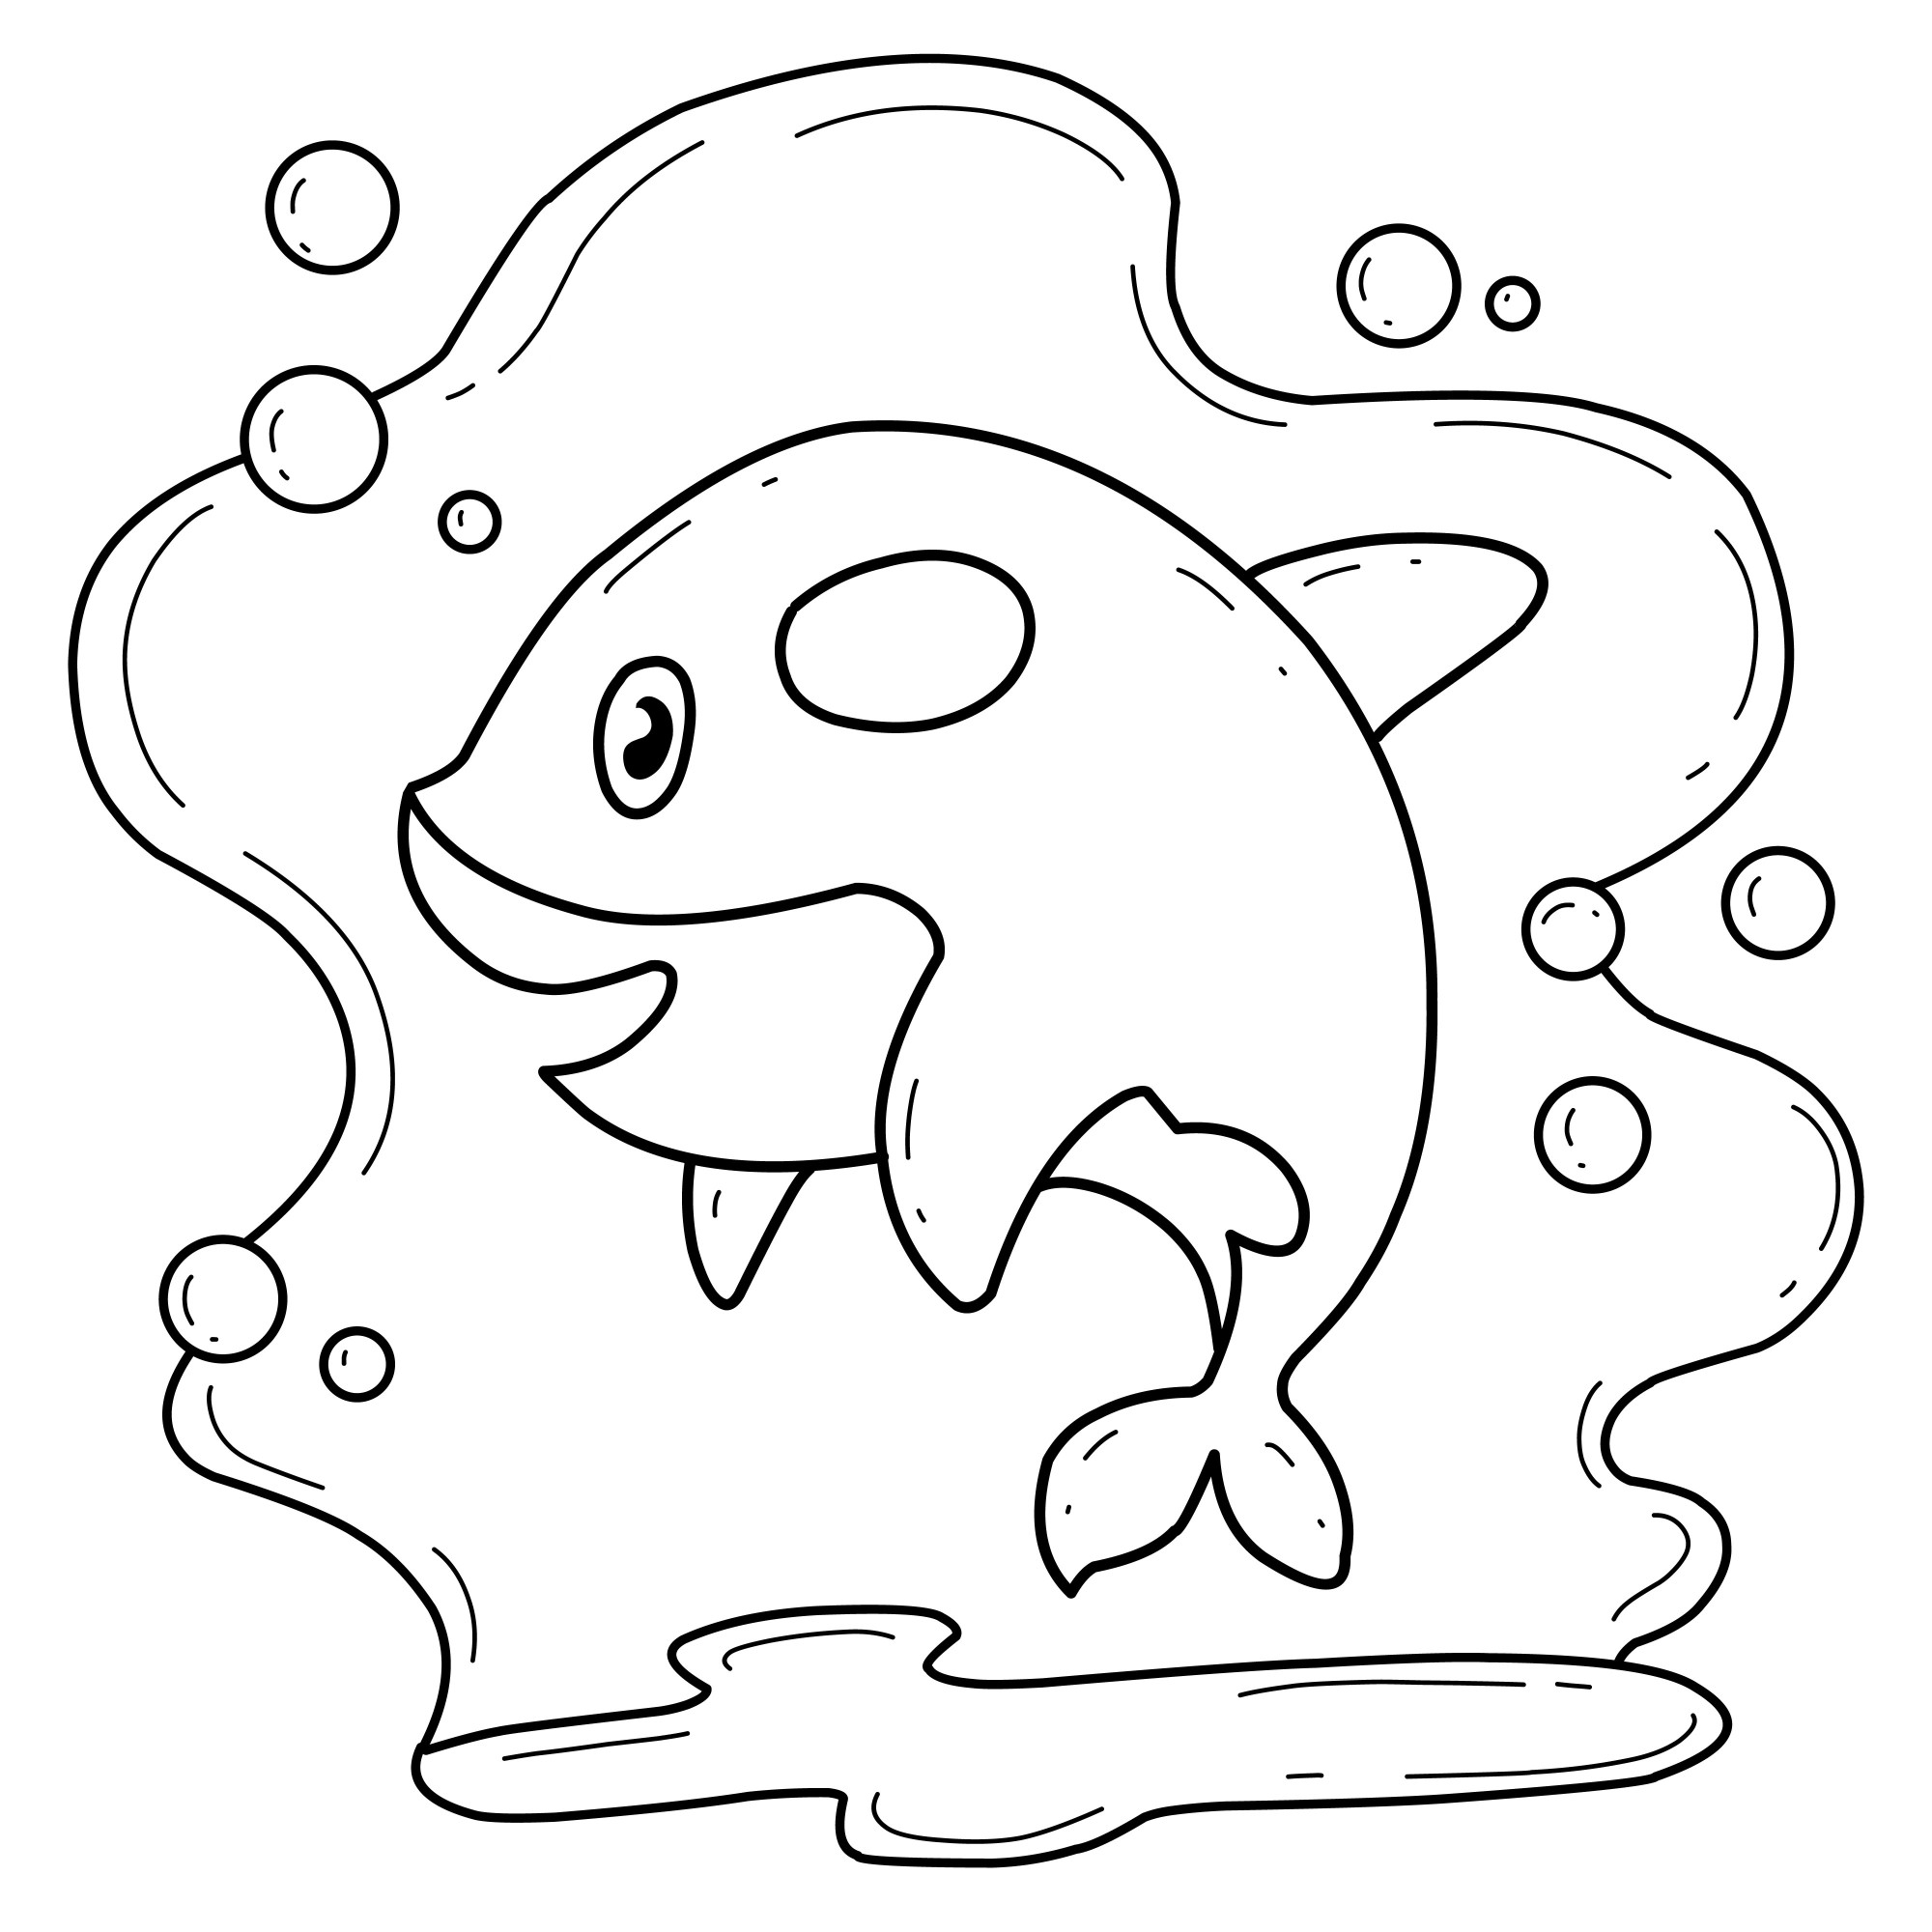 Раскраска для детей: мультяшный дельфин касатка